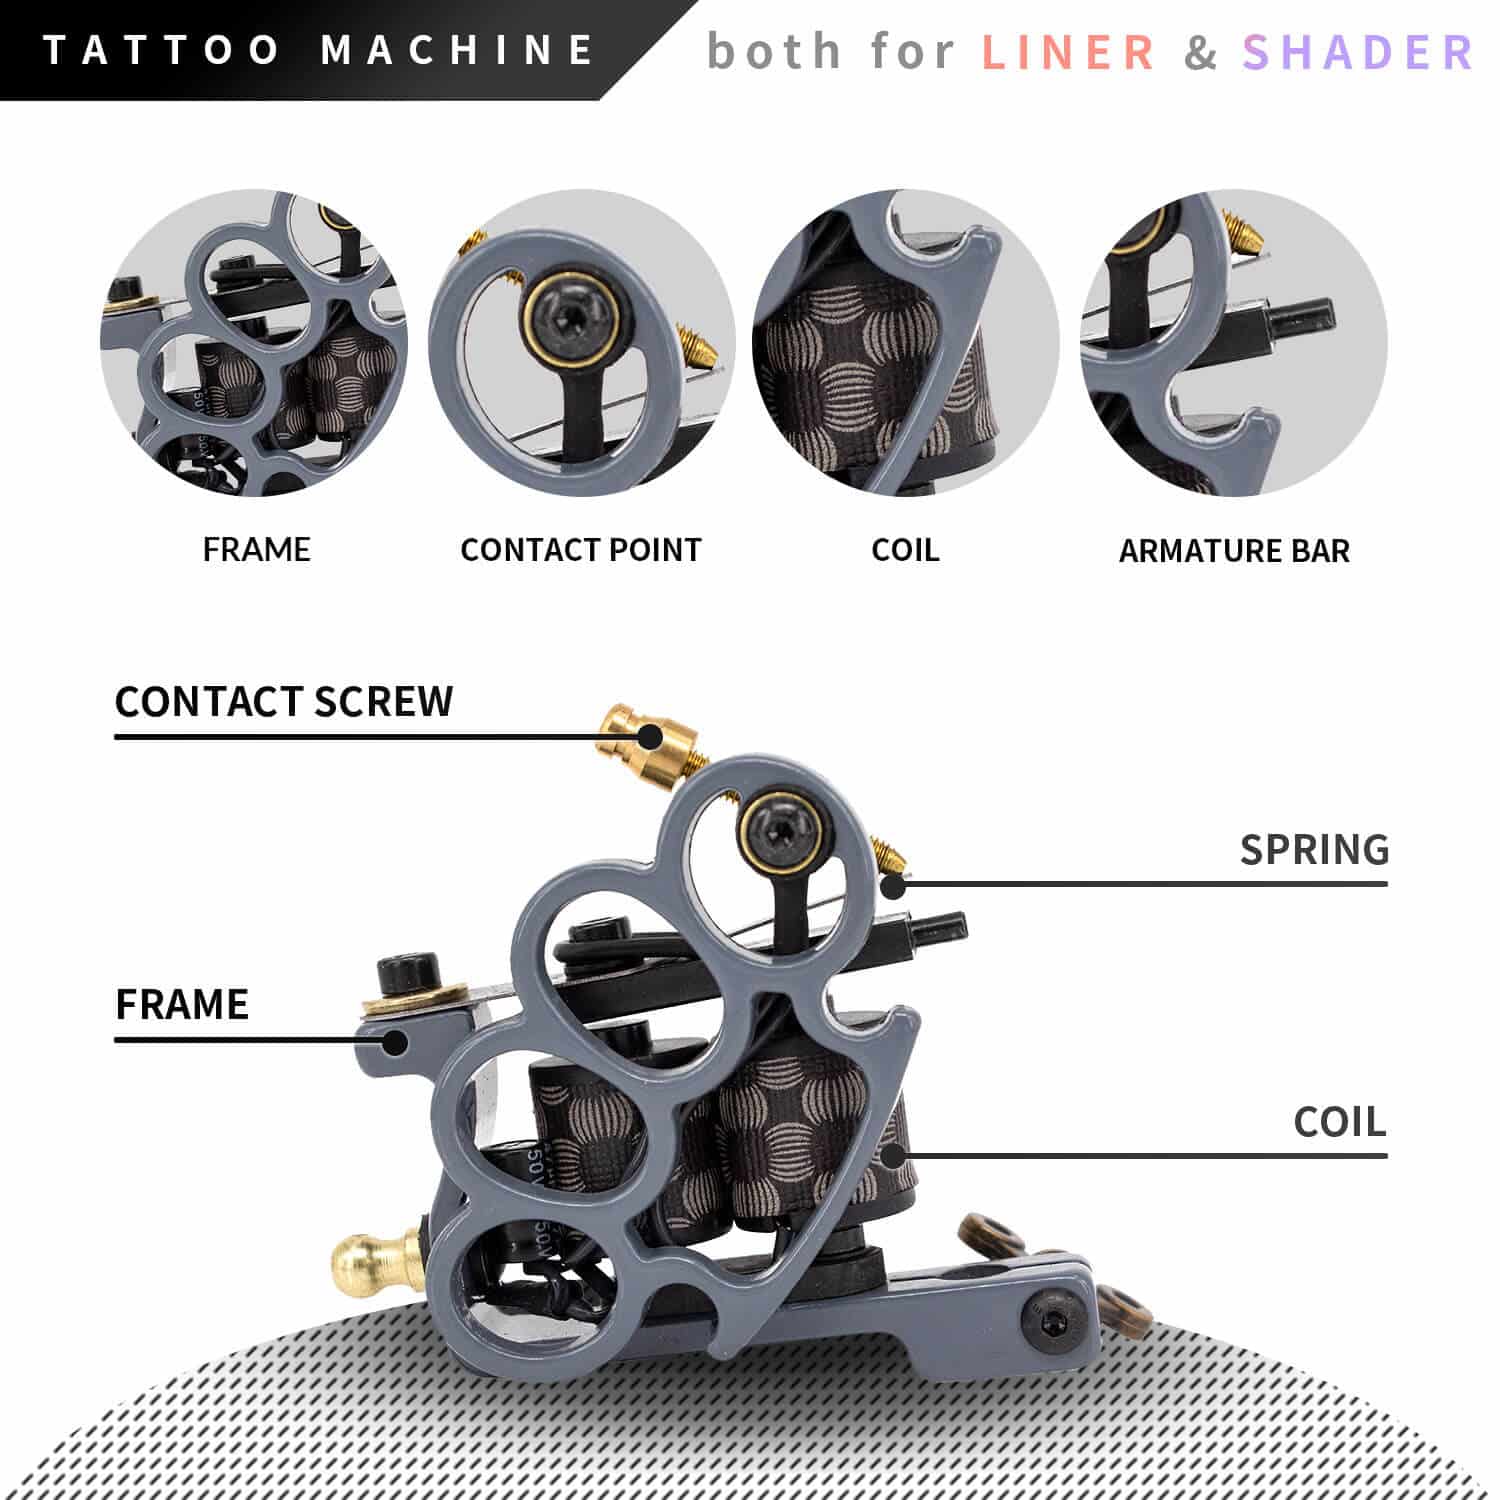 SOTICA Tattoo Kit - Complete 36 PCS Tattoo Pen Kit Professional Tattoo  Machine Pen Kit with Tattoo Cartridges Tattoo Power Supply Tattoo Foot  Pedal Tattoo Ink Tattoo Accessories for Tattoo Supply :